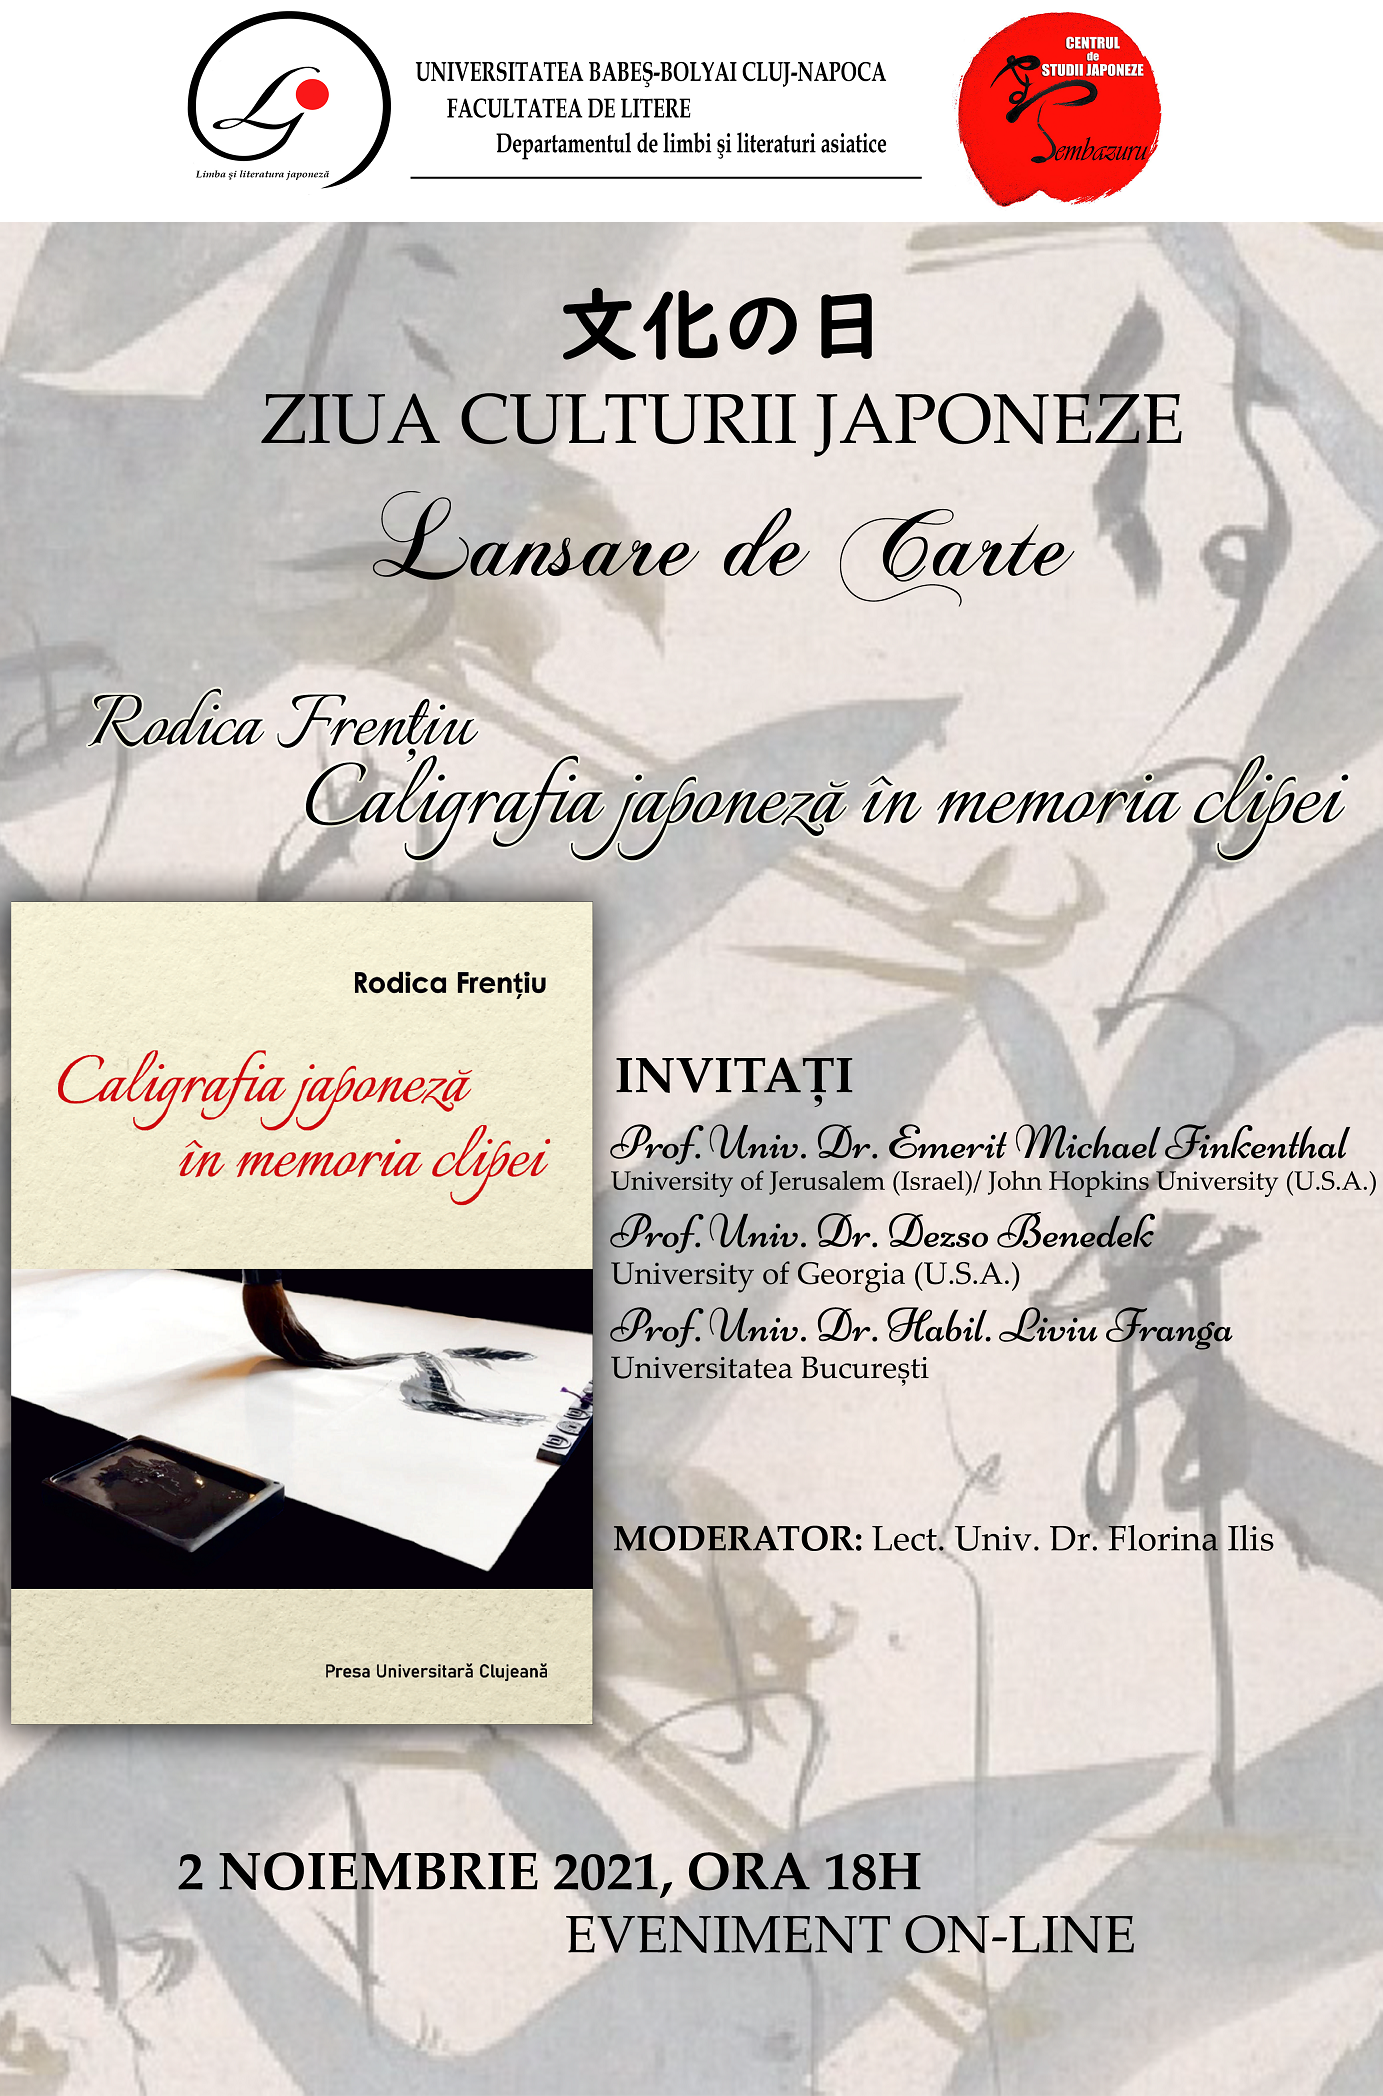 Ziua Culturii Japoneze: Lansare de carte